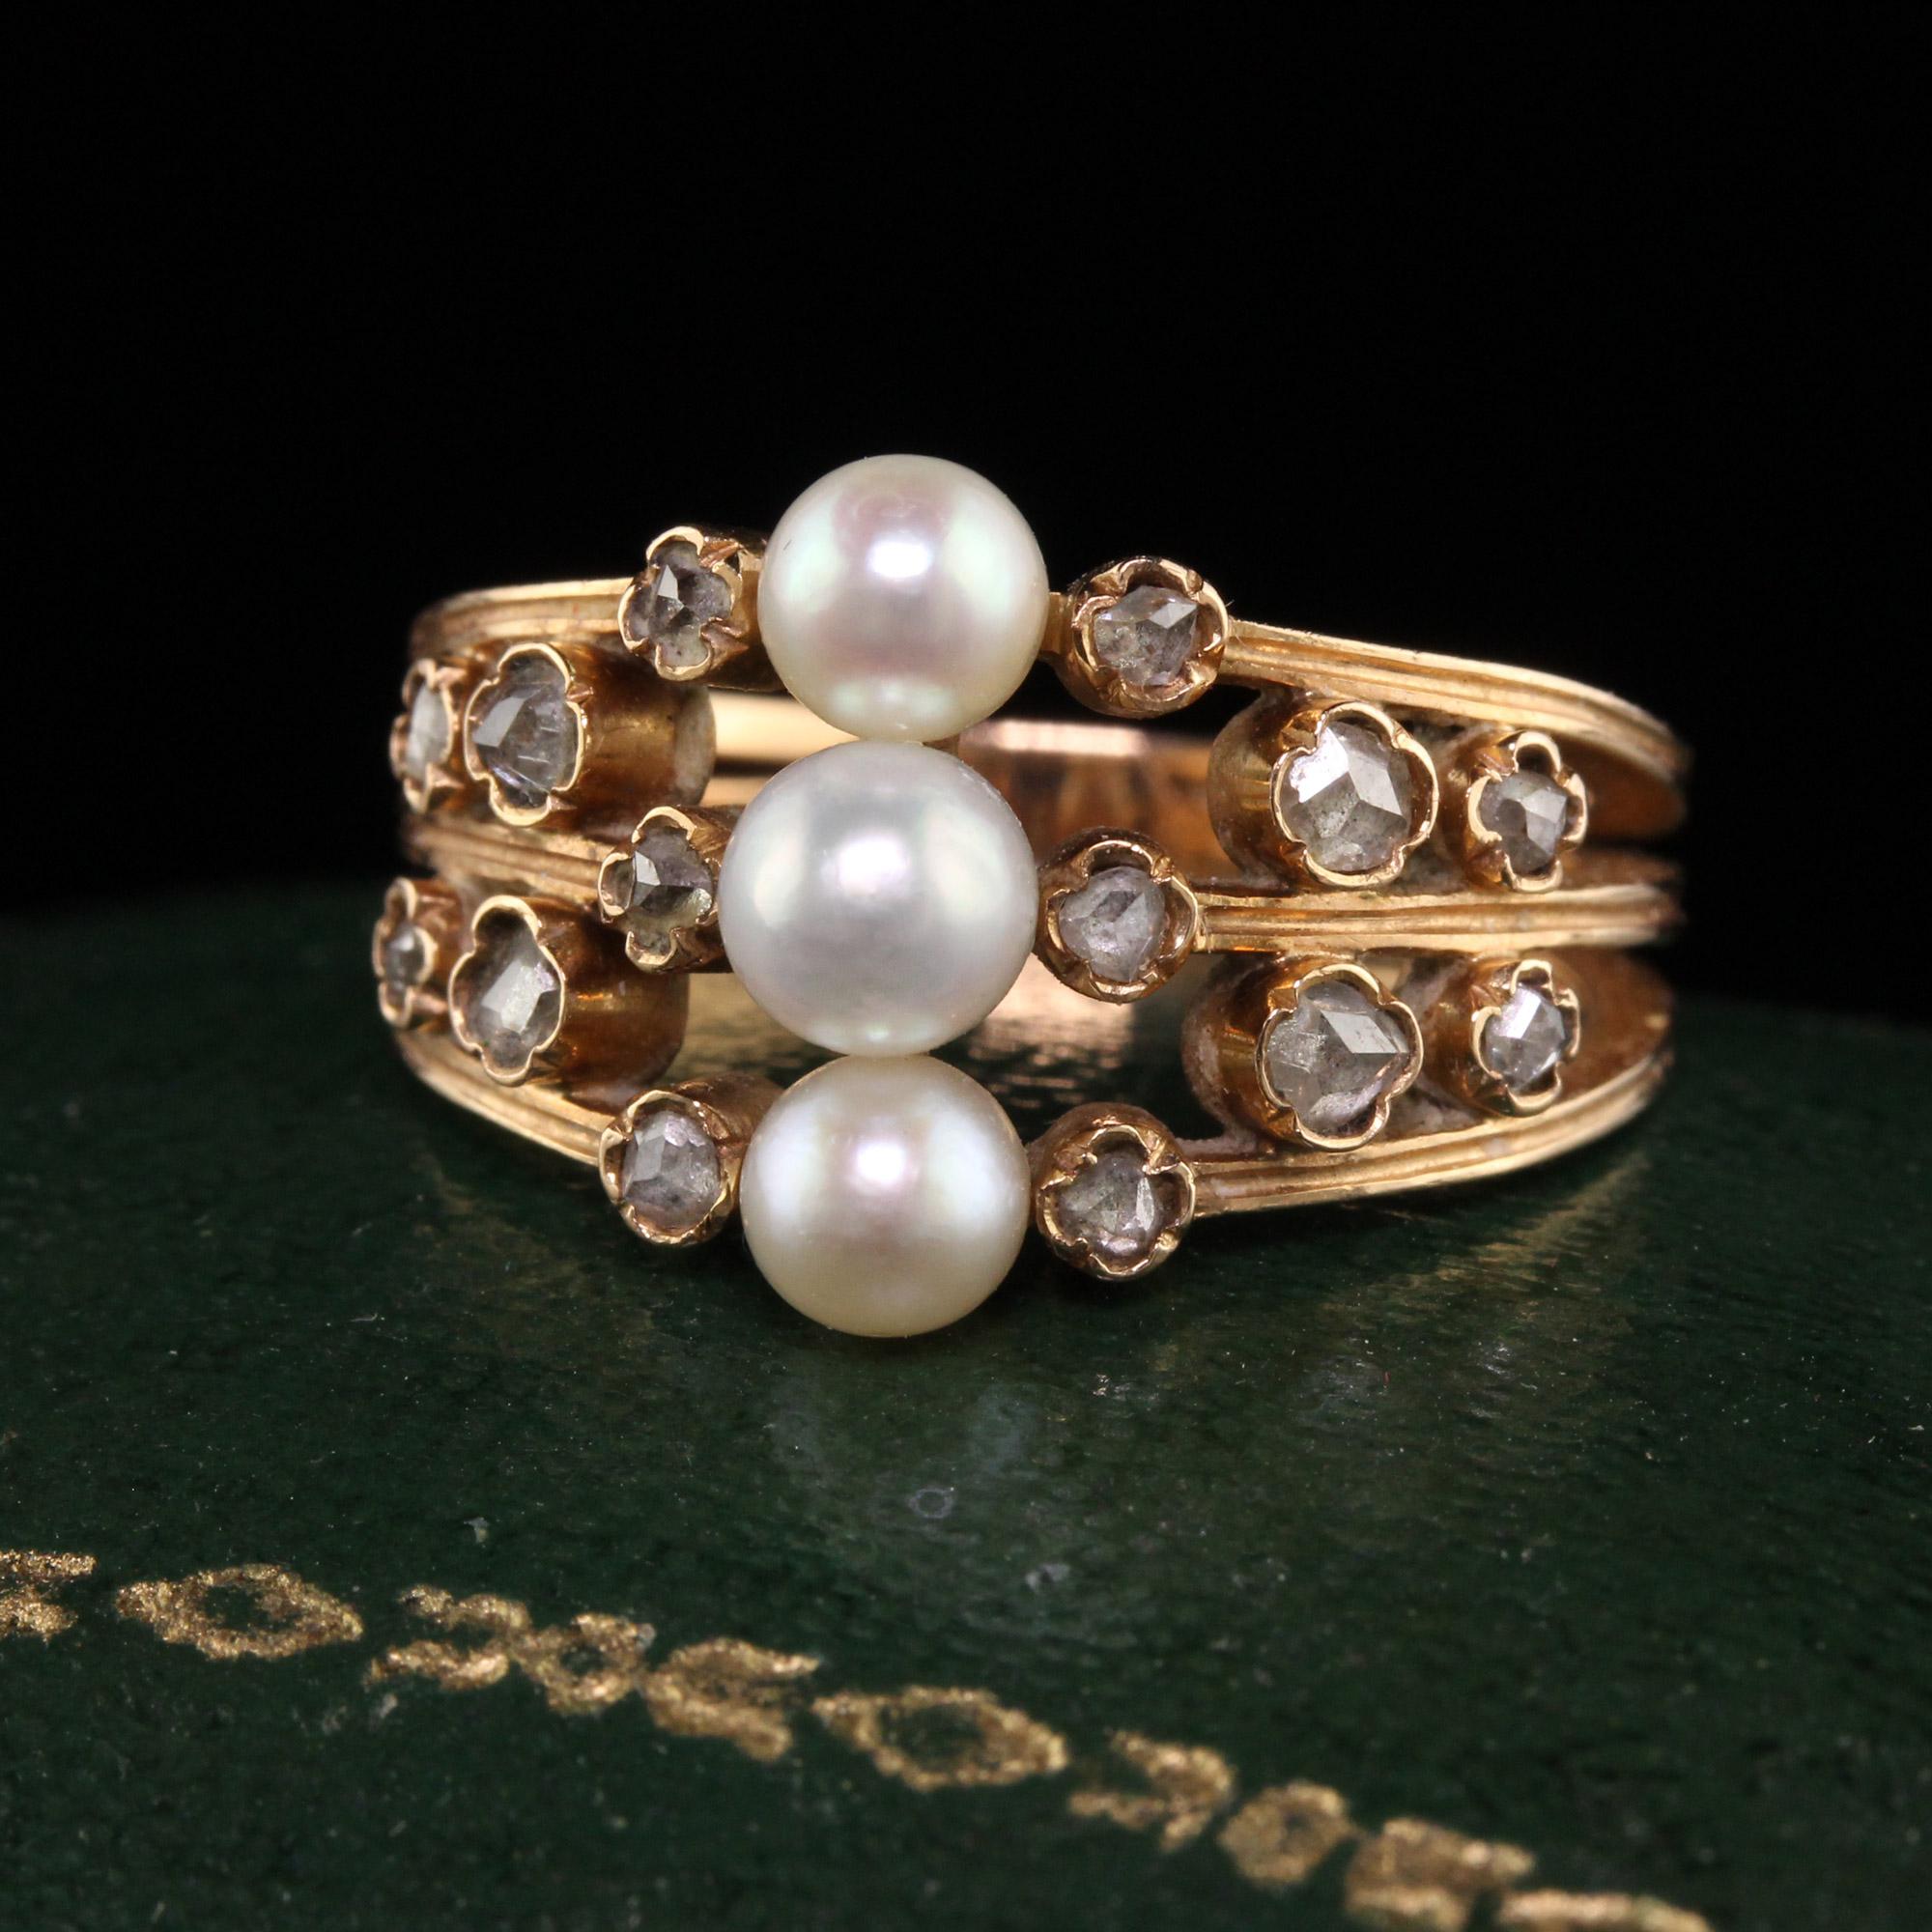 Schöne antike Art Deco 18K Rose Gold Perle und Rose Cut Diamond Ring. Dieser schöne Ring ist aus 18 Karat Roségold gefertigt. In der Mitte befinden sich 3 wunderschöne Perlen und auf jeder Seite sind Diamanten im Rosenschliff in einem schönen Muster